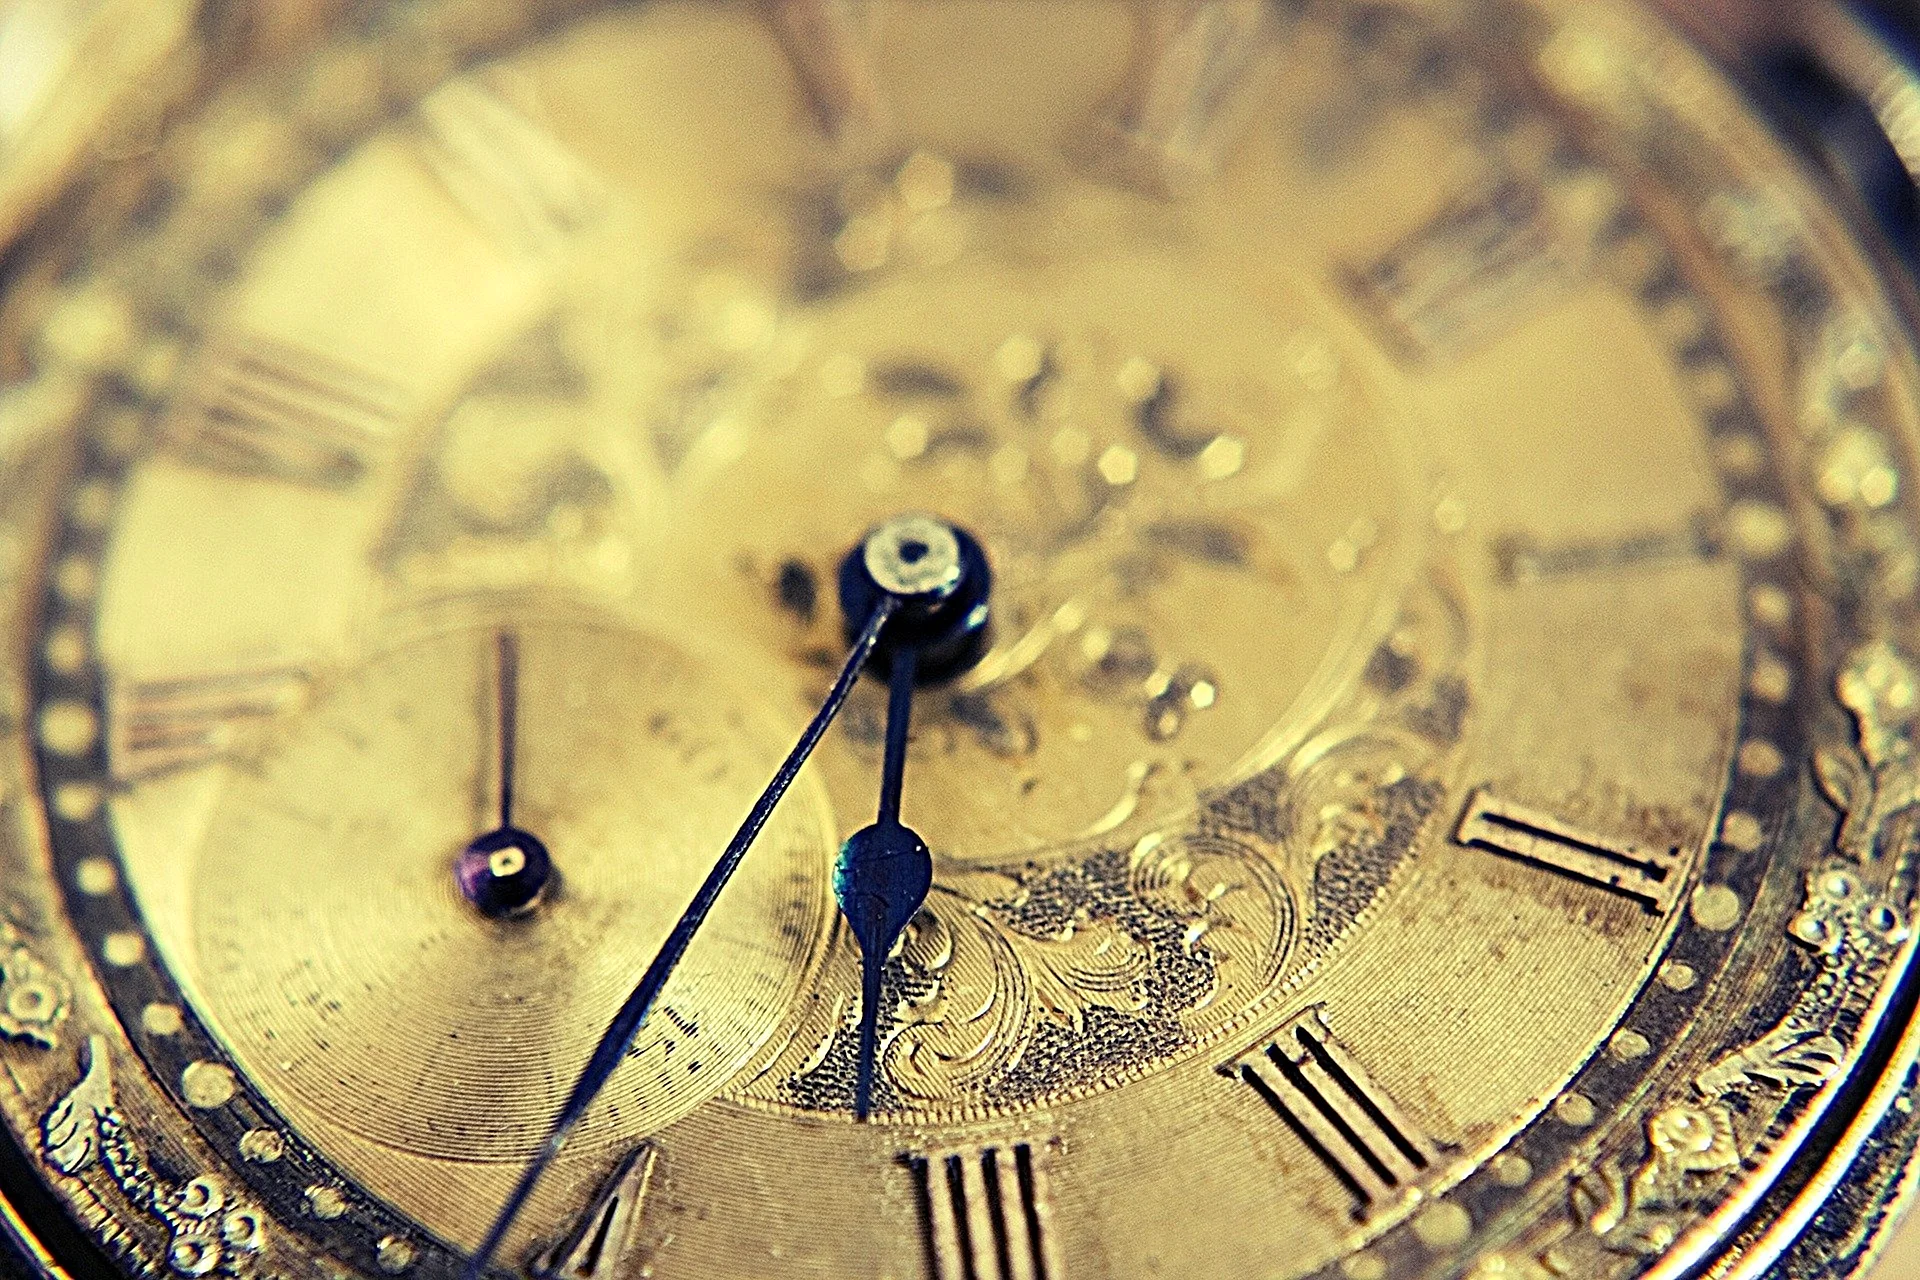 Красивые старинные часы